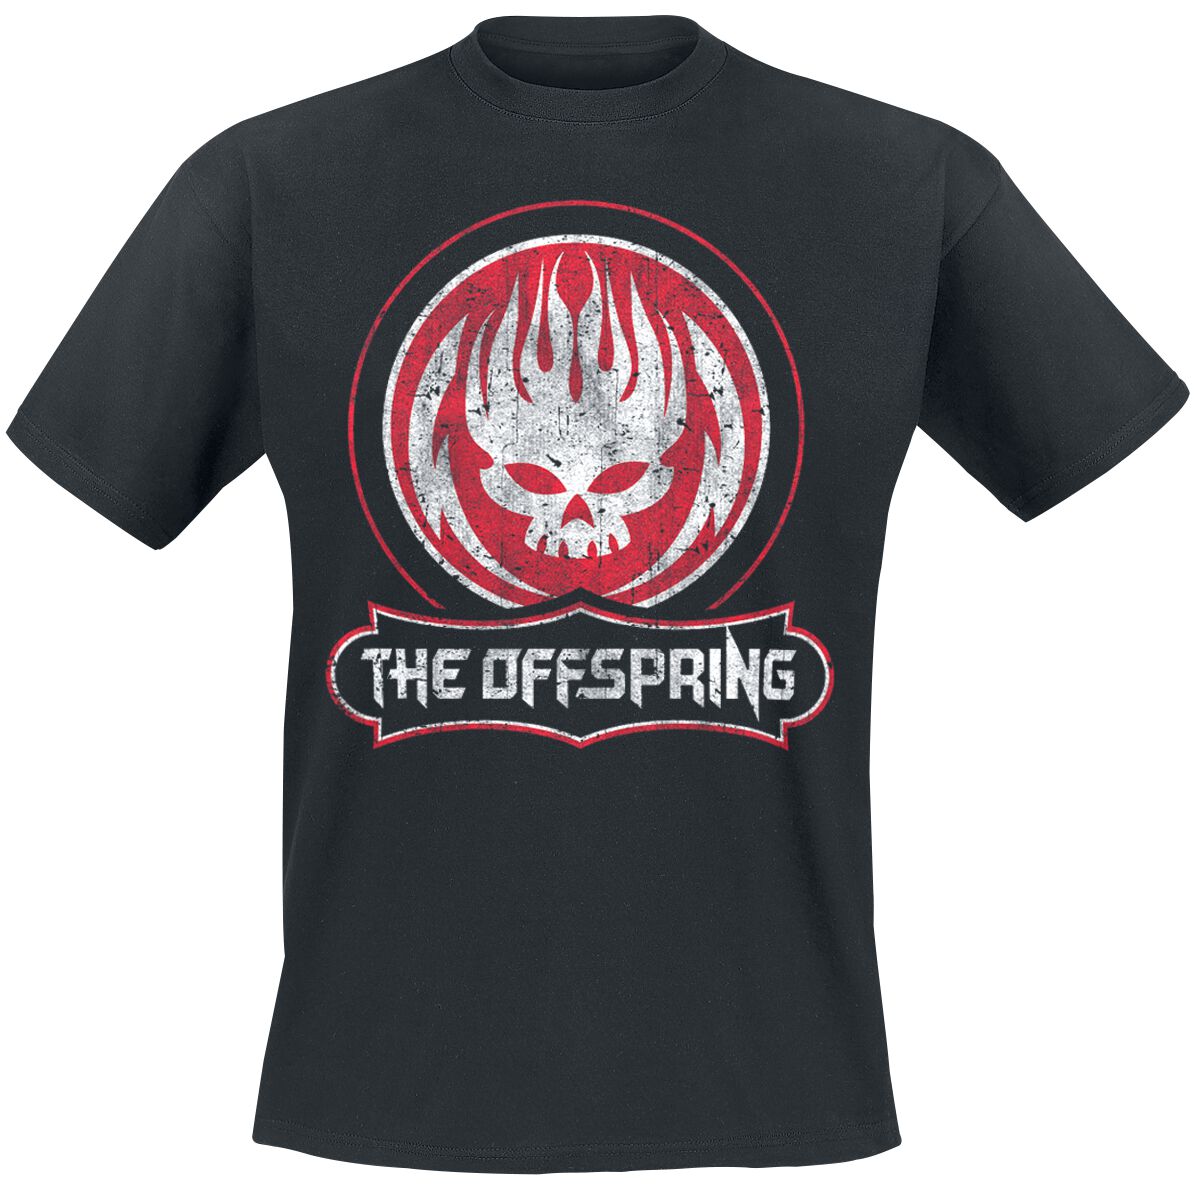 The Offspring T-Shirt - Distressed Skull - S bis XXL - für Männer - Größe XL - schwarz  - Lizenziertes Merchandise!